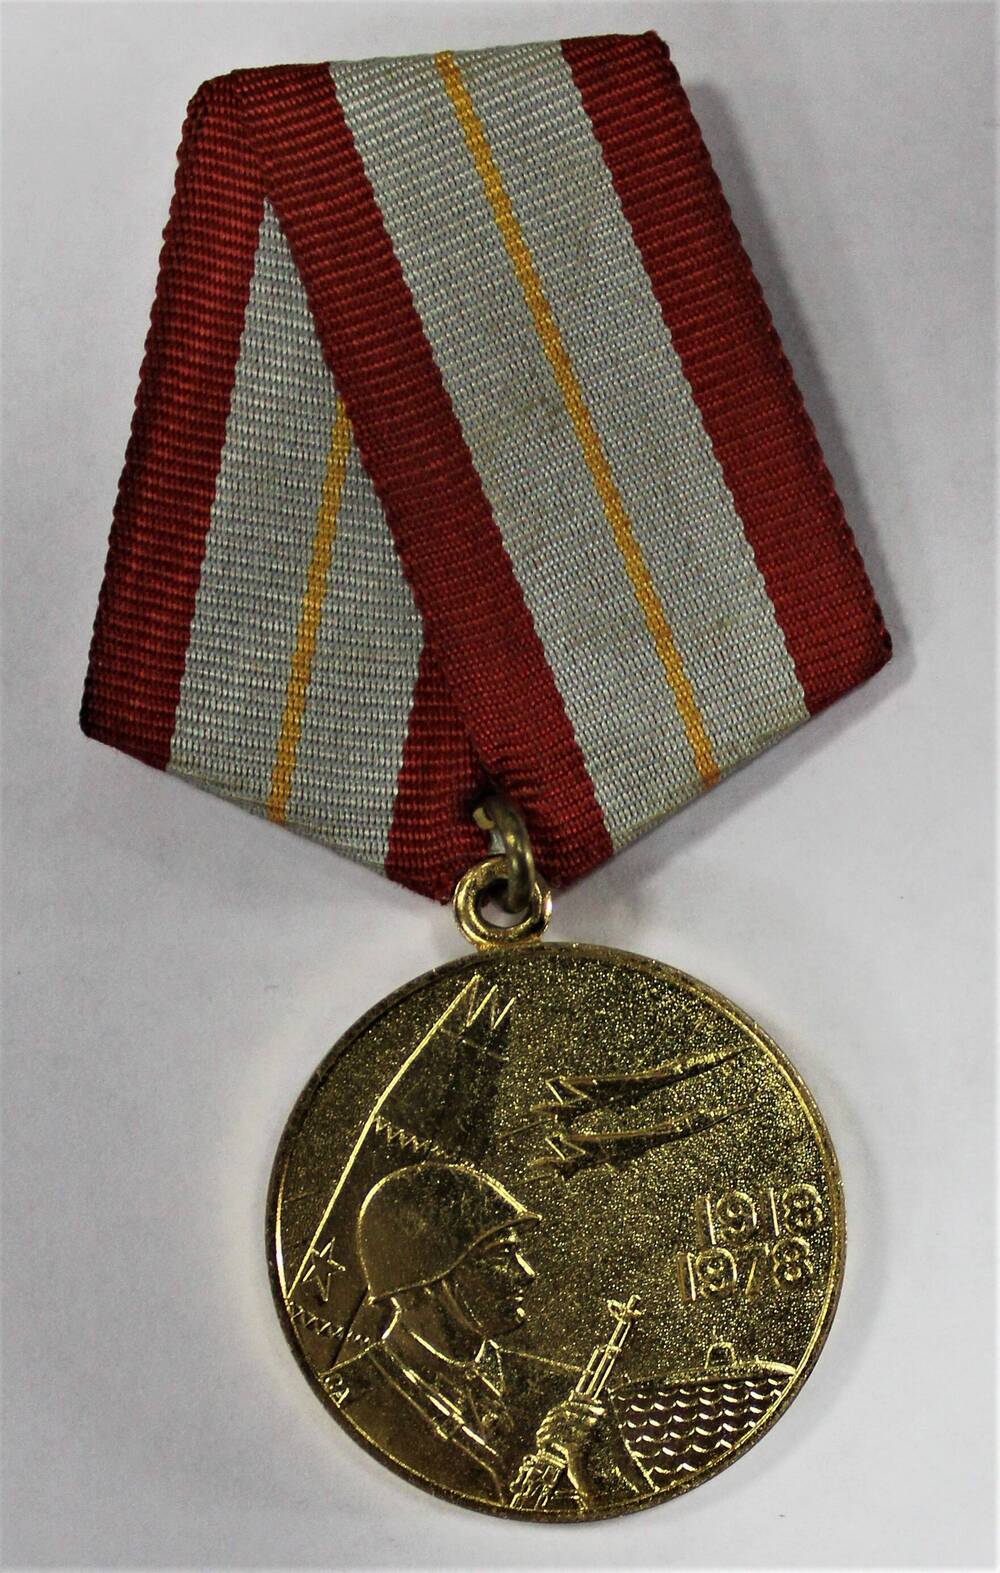 Медаль 60 лет Вооруженных Сил СССР Титова Михаила Николаевича - ветерана Великой Отечественной войны 1941-1945 гг.